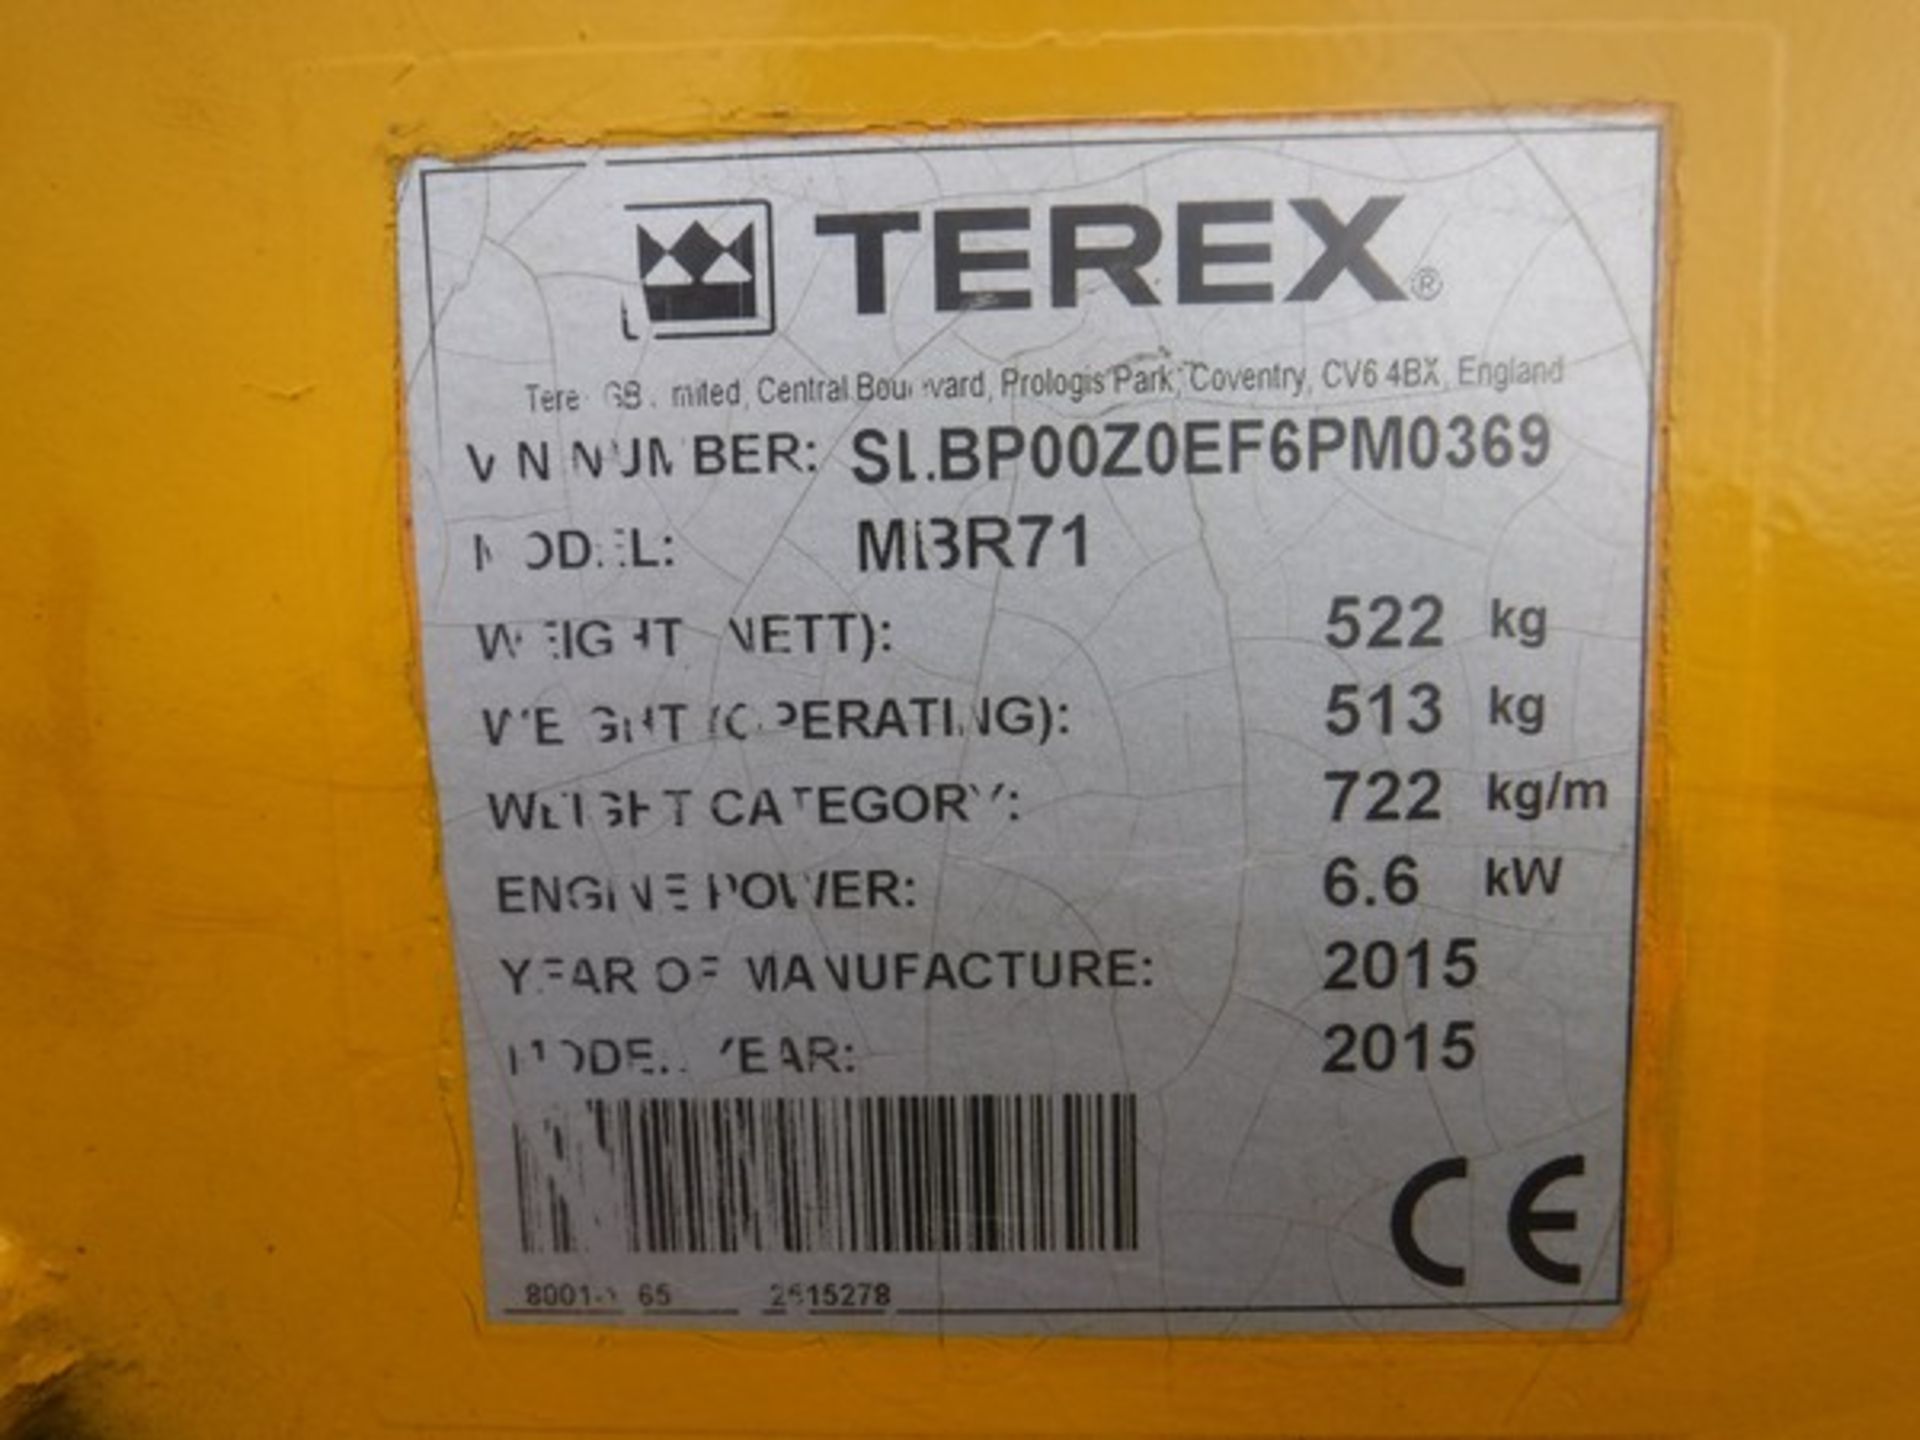 TEREX MBR17 PEDESTRIAN ROLLER 2015 627HRS (NOT VERIFIED) SN - 6PM0369 - Image 3 of 4